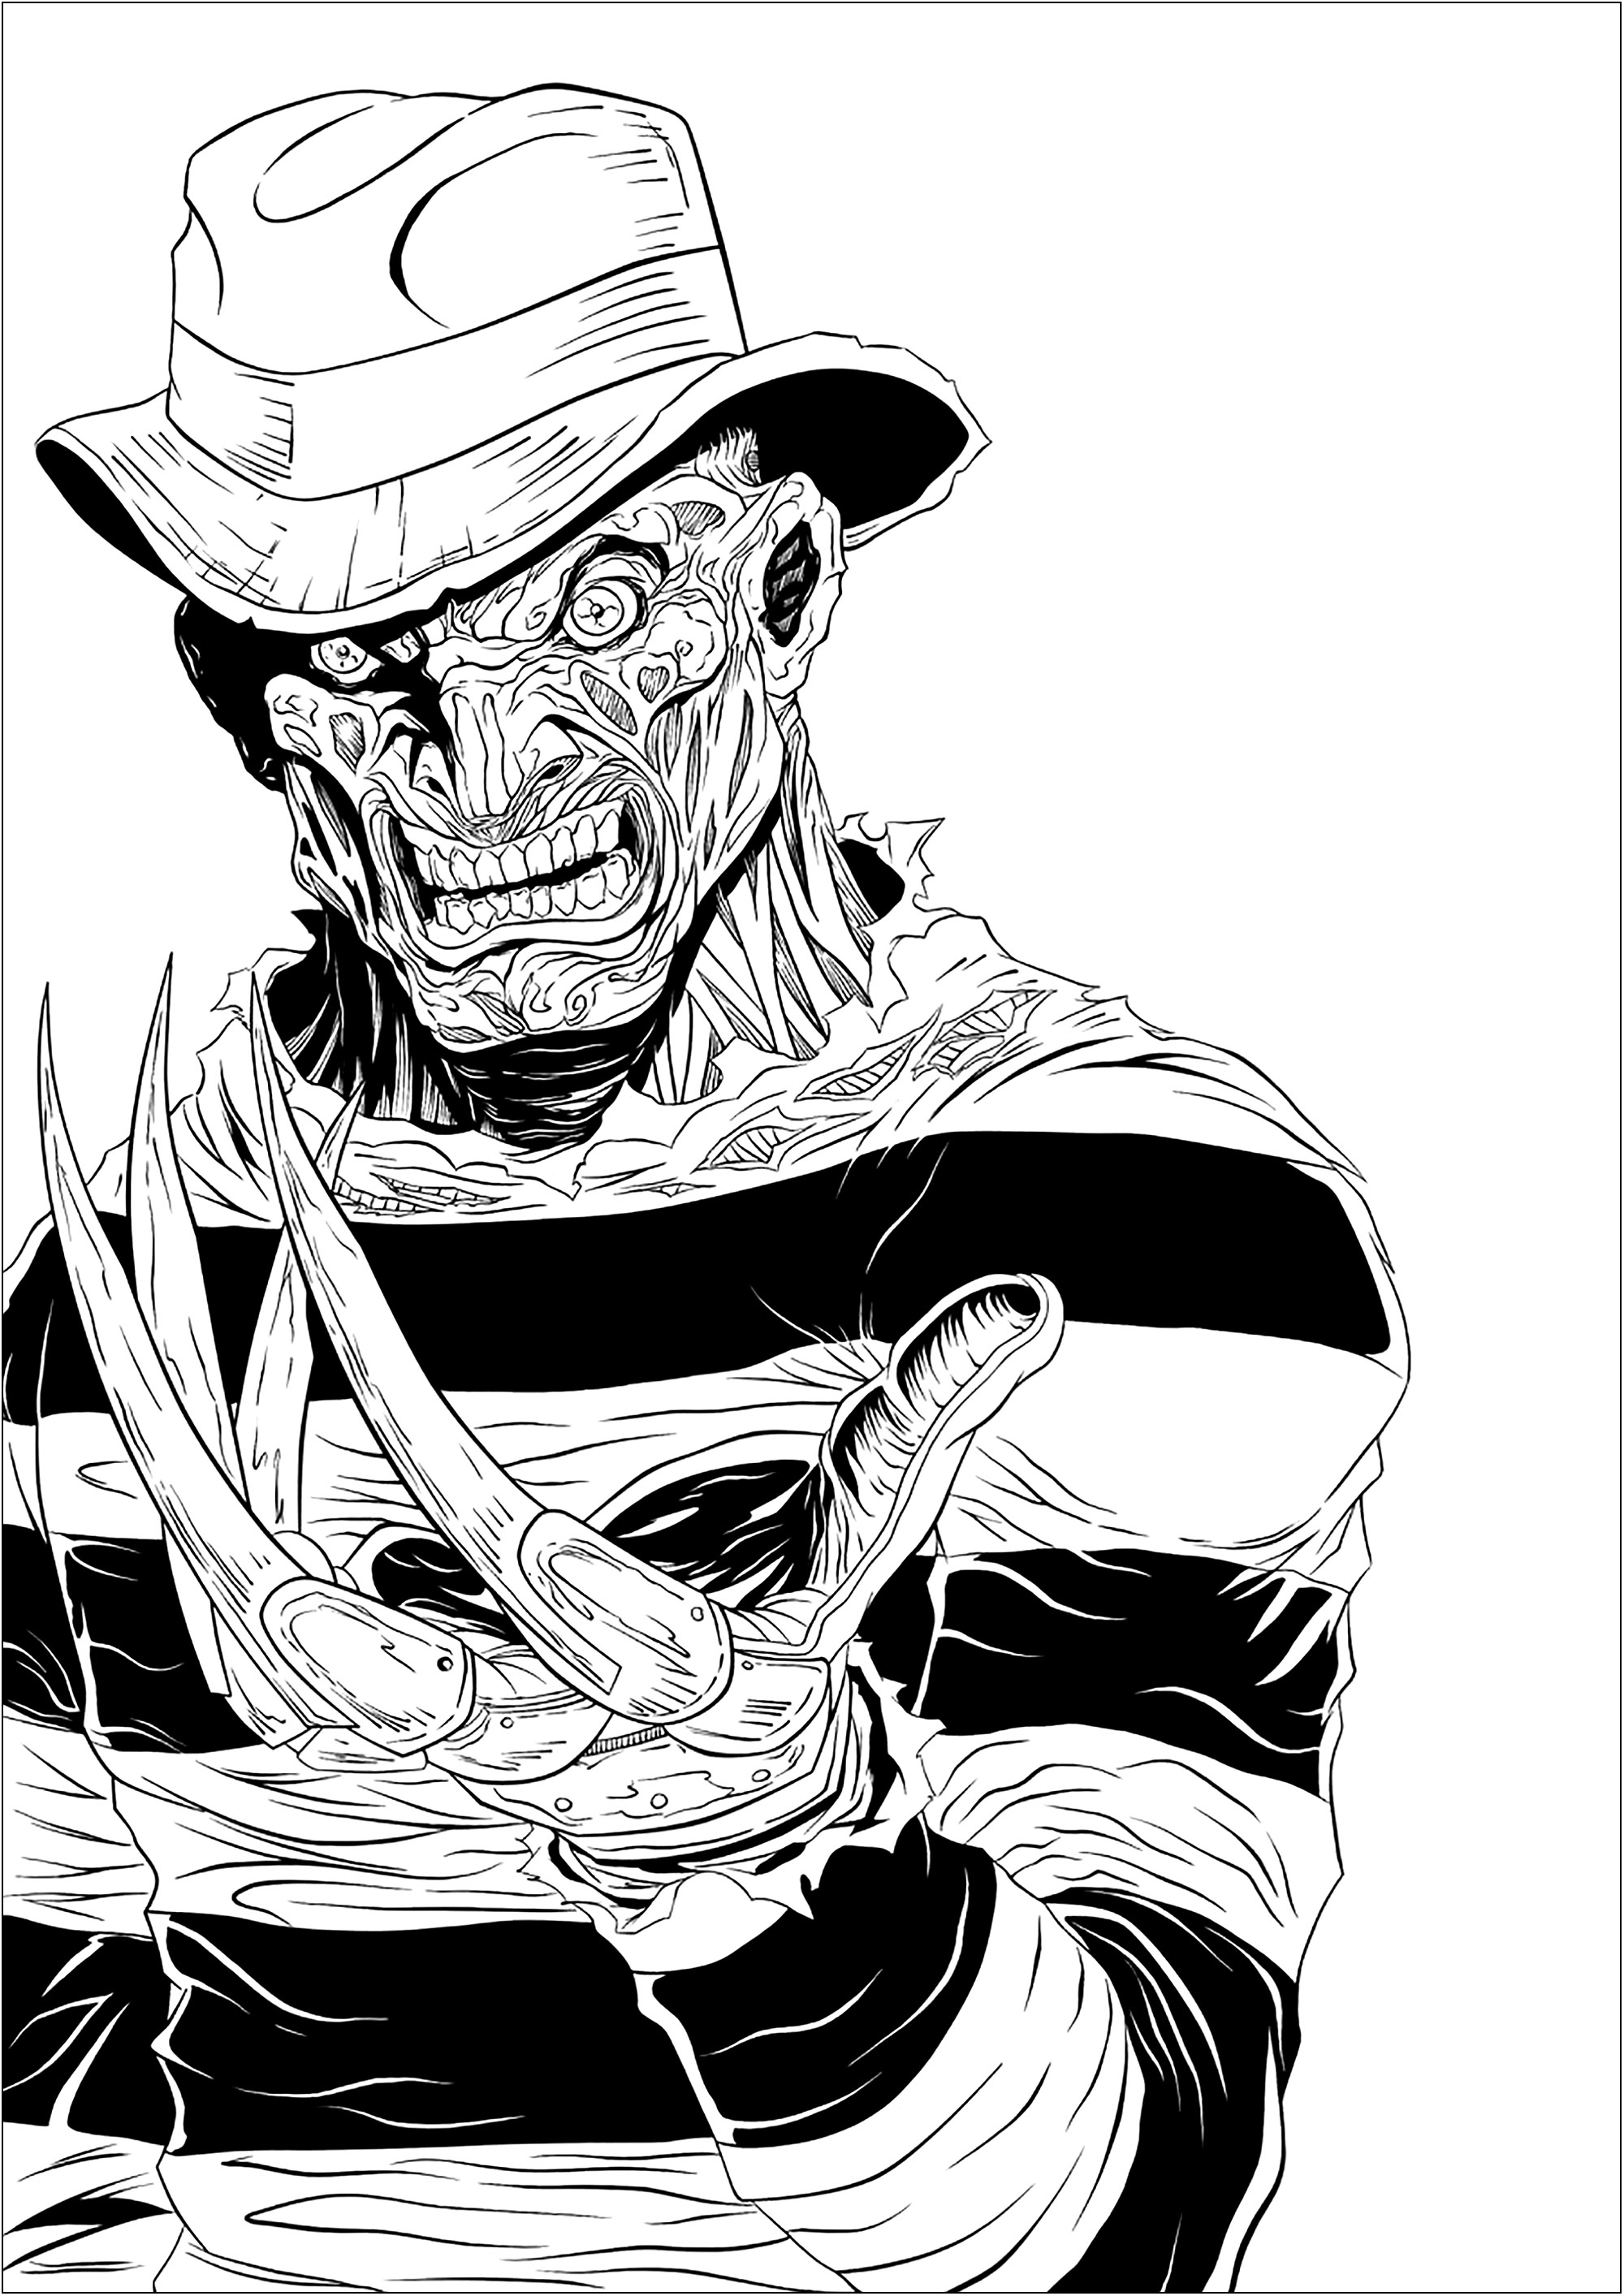 Der furchterregende Freddy Krueger und seine scharfen Krallen, Künstler : Digital Inkz